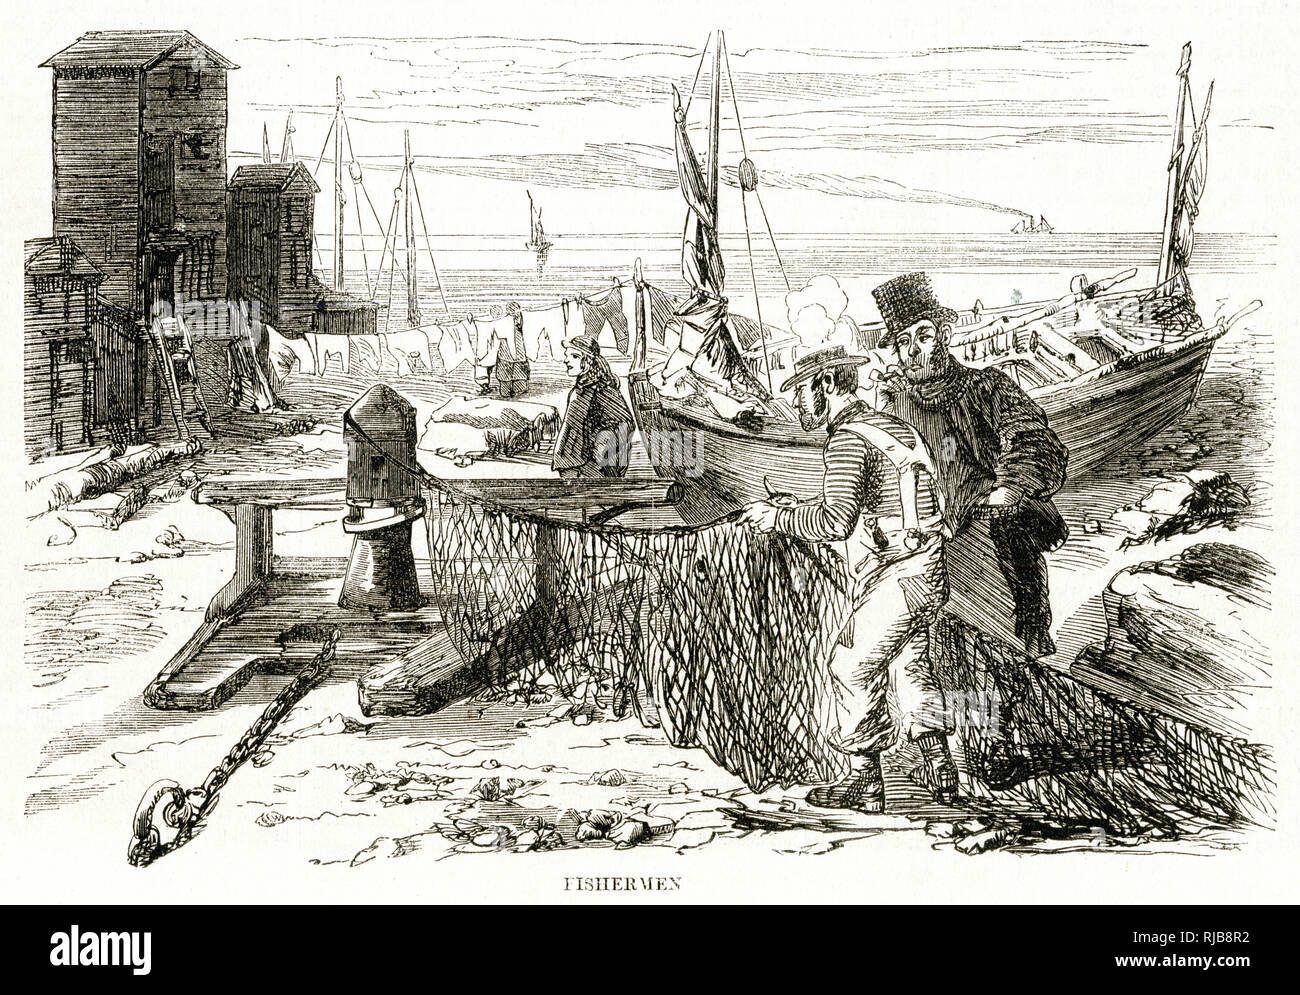 Hastings - fishermen 1857 Stock Photo